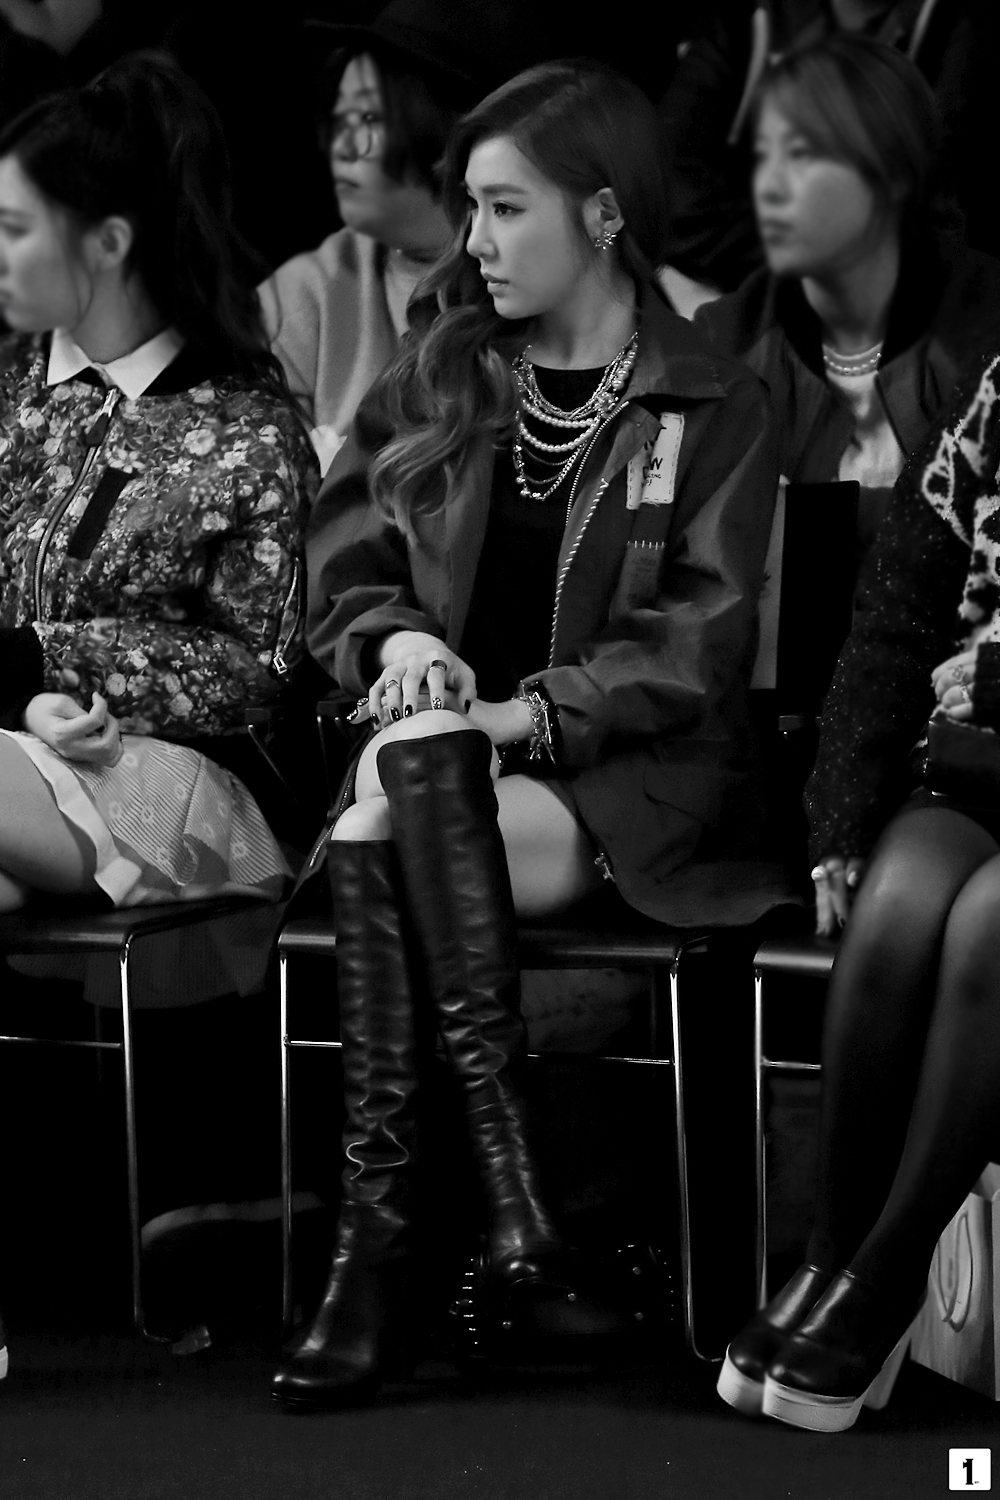 [PIC][20-10-2014]Tiffany xuất hiện tại buổi ra mắt BTS mới của thương hiệu "Steve J & Yoni P" trong khuôn khổ tuần Lễ thời trang "2015 S/S SEOUL FASHION WEEK" vào chiều nay 2552133354451F1505CDD8